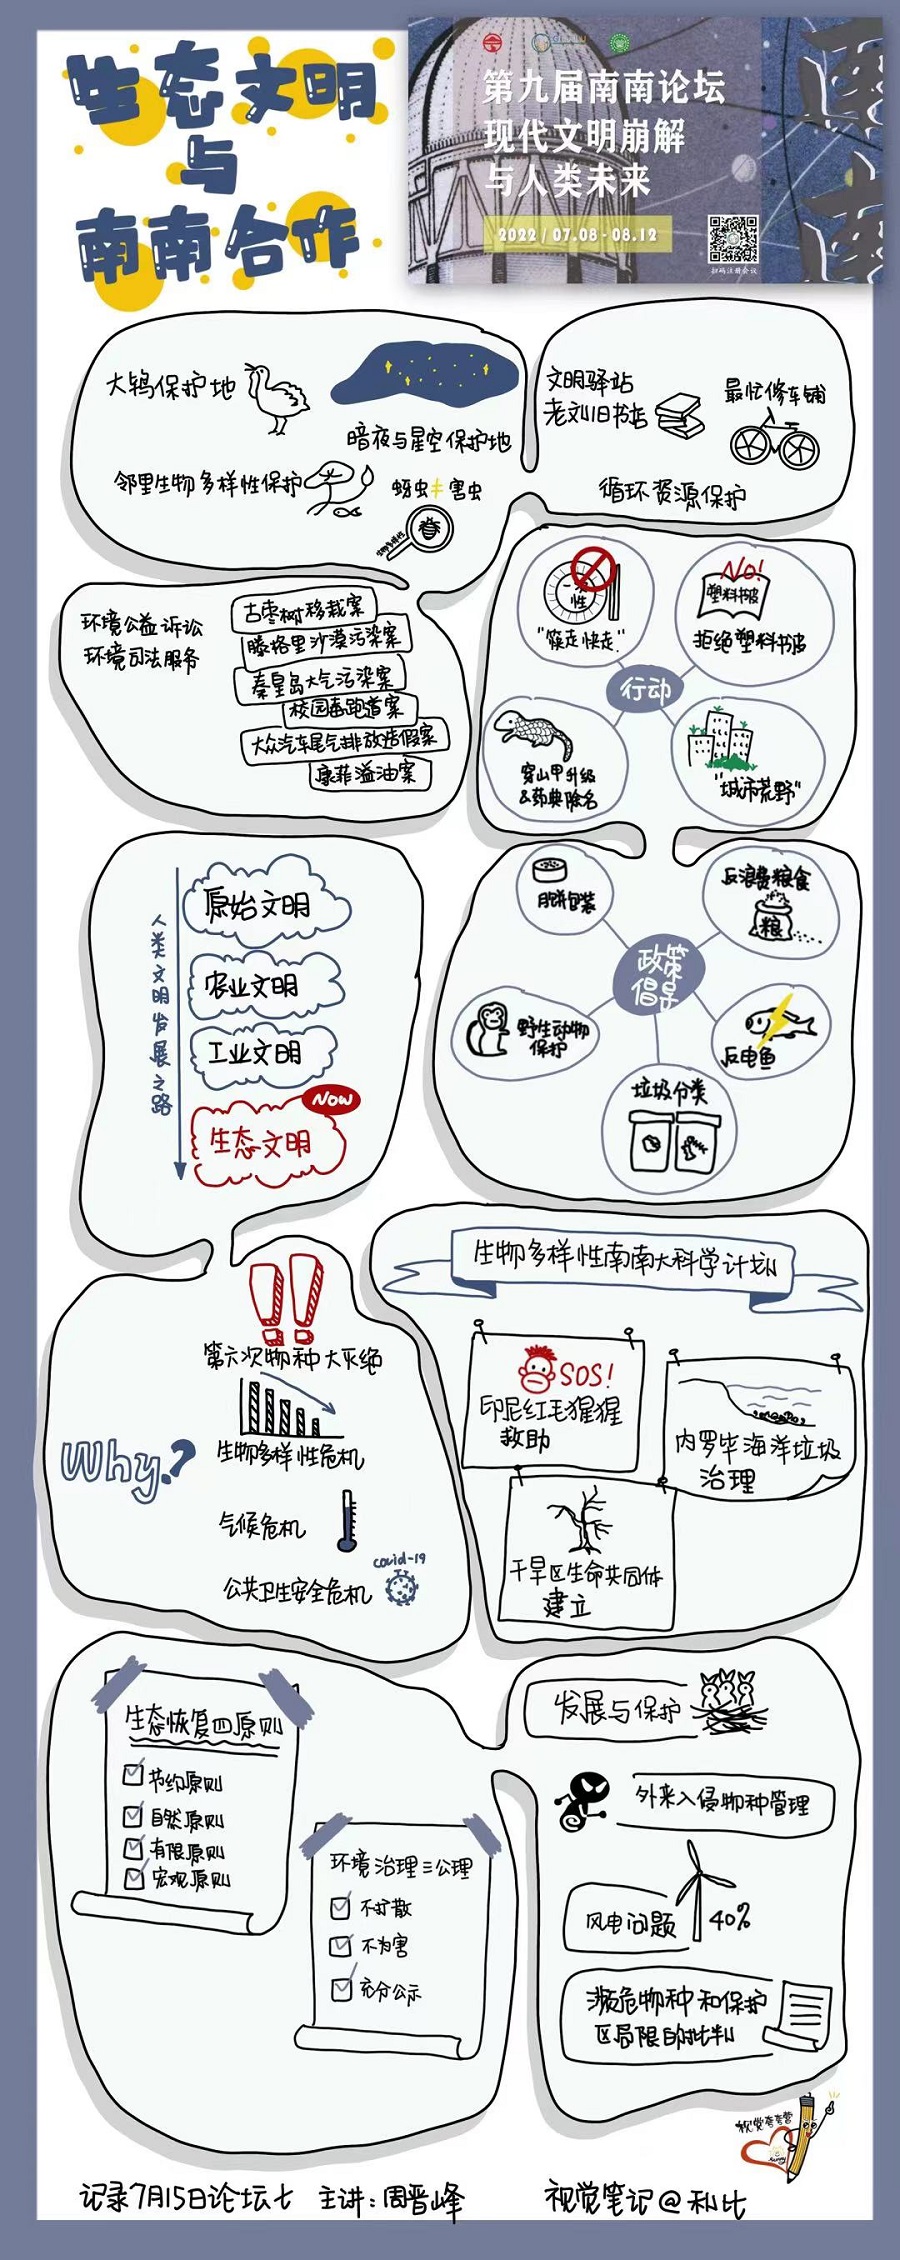 绿会志愿者为周晋峰博士第九届南南论坛演讲绘制漫画式思维导图4·.jpg